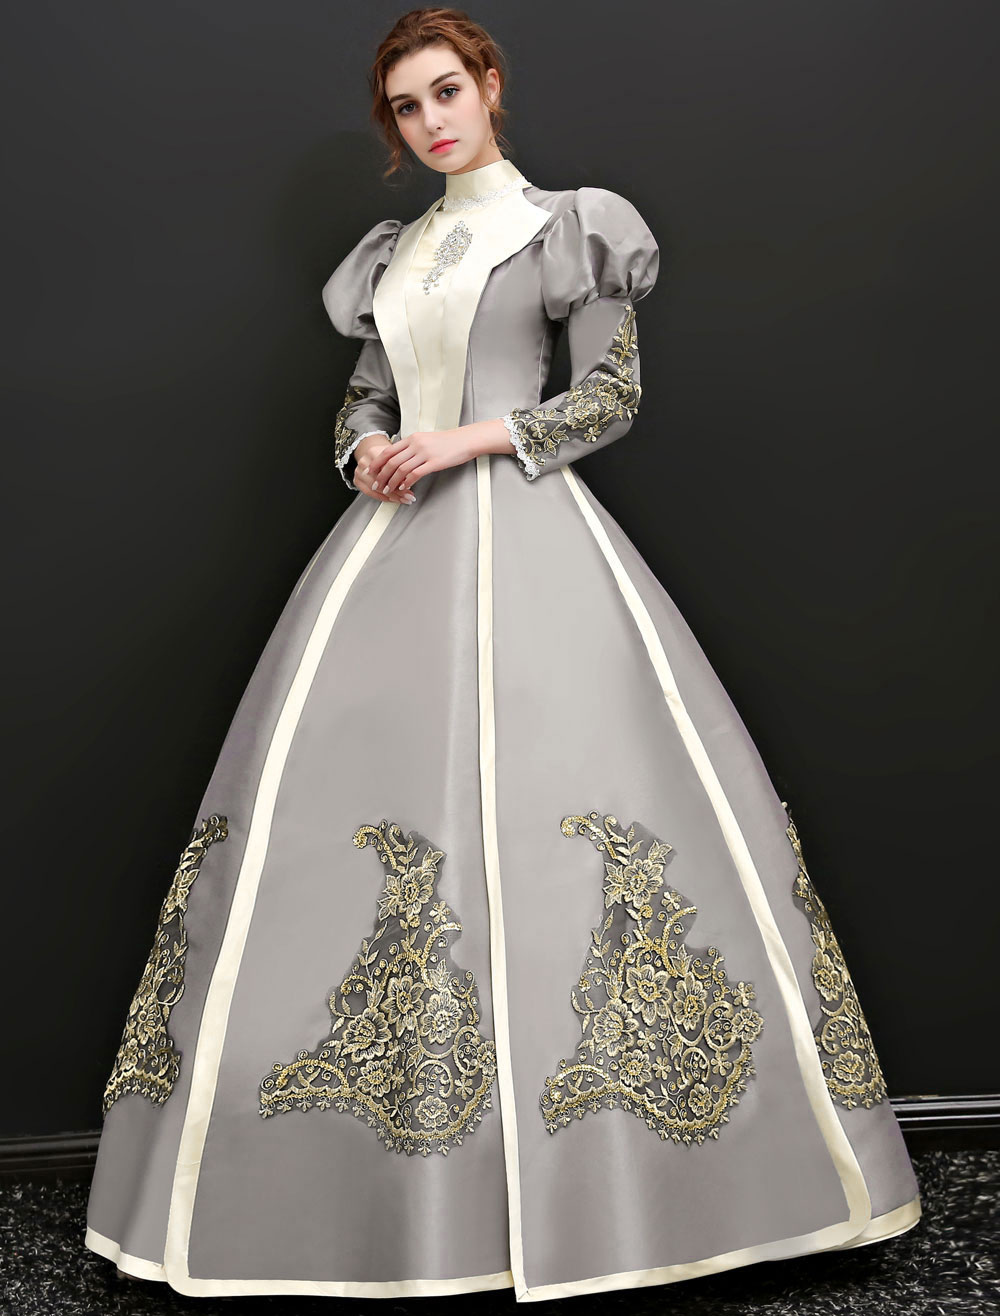 中世 ドレス 女性用 プリンセス 貴族ドレス シルバーグレー 七分袖 ヴィクトリア風 卒業パーティー レトロ ヨーロッパ 宮廷風 中世 ドレス